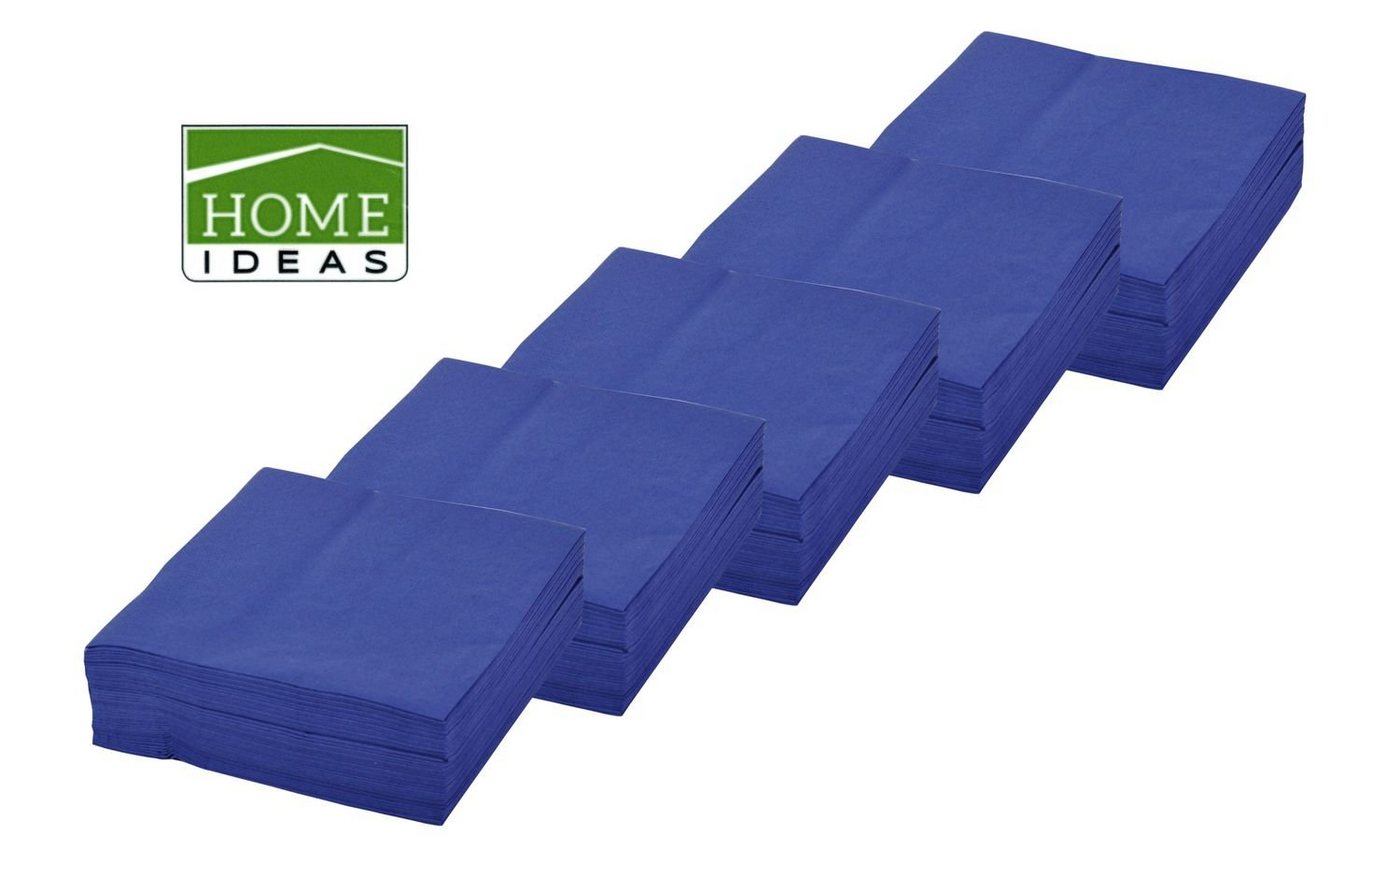 Home Ideas Papierserviette 250 Servietten blau 33x33cm 3lagig 1/4 Falz Papierserviette Tischdeko von Home Ideas